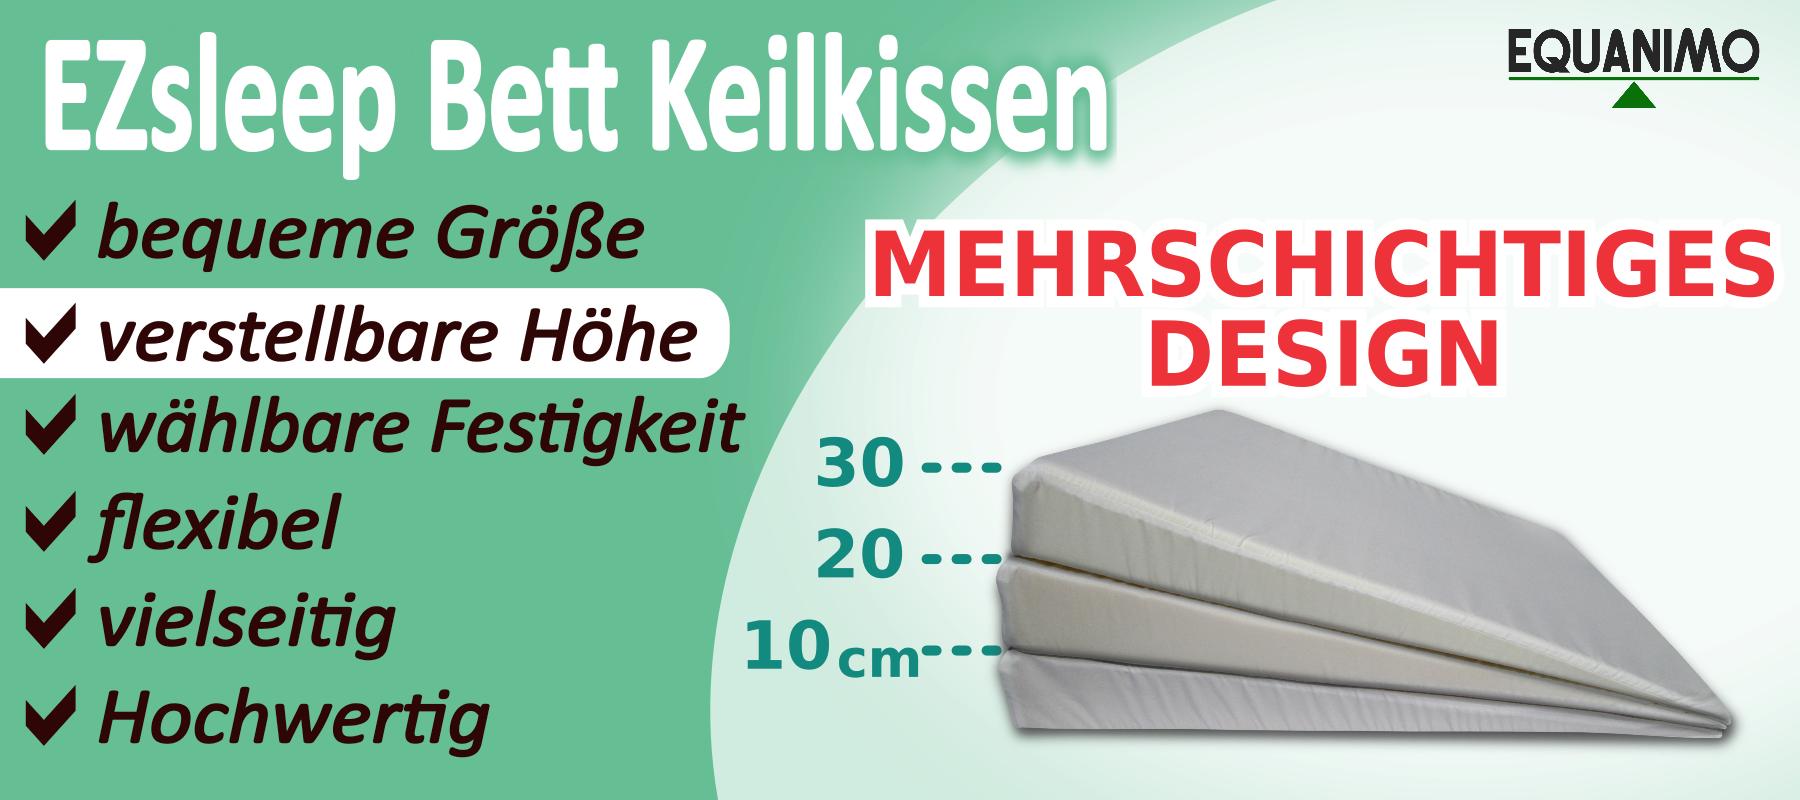 EZsleep Bett Keilkissen mit Mehrschichtigem Design: verstellbare Höhe - 30, 20, oder 10cm